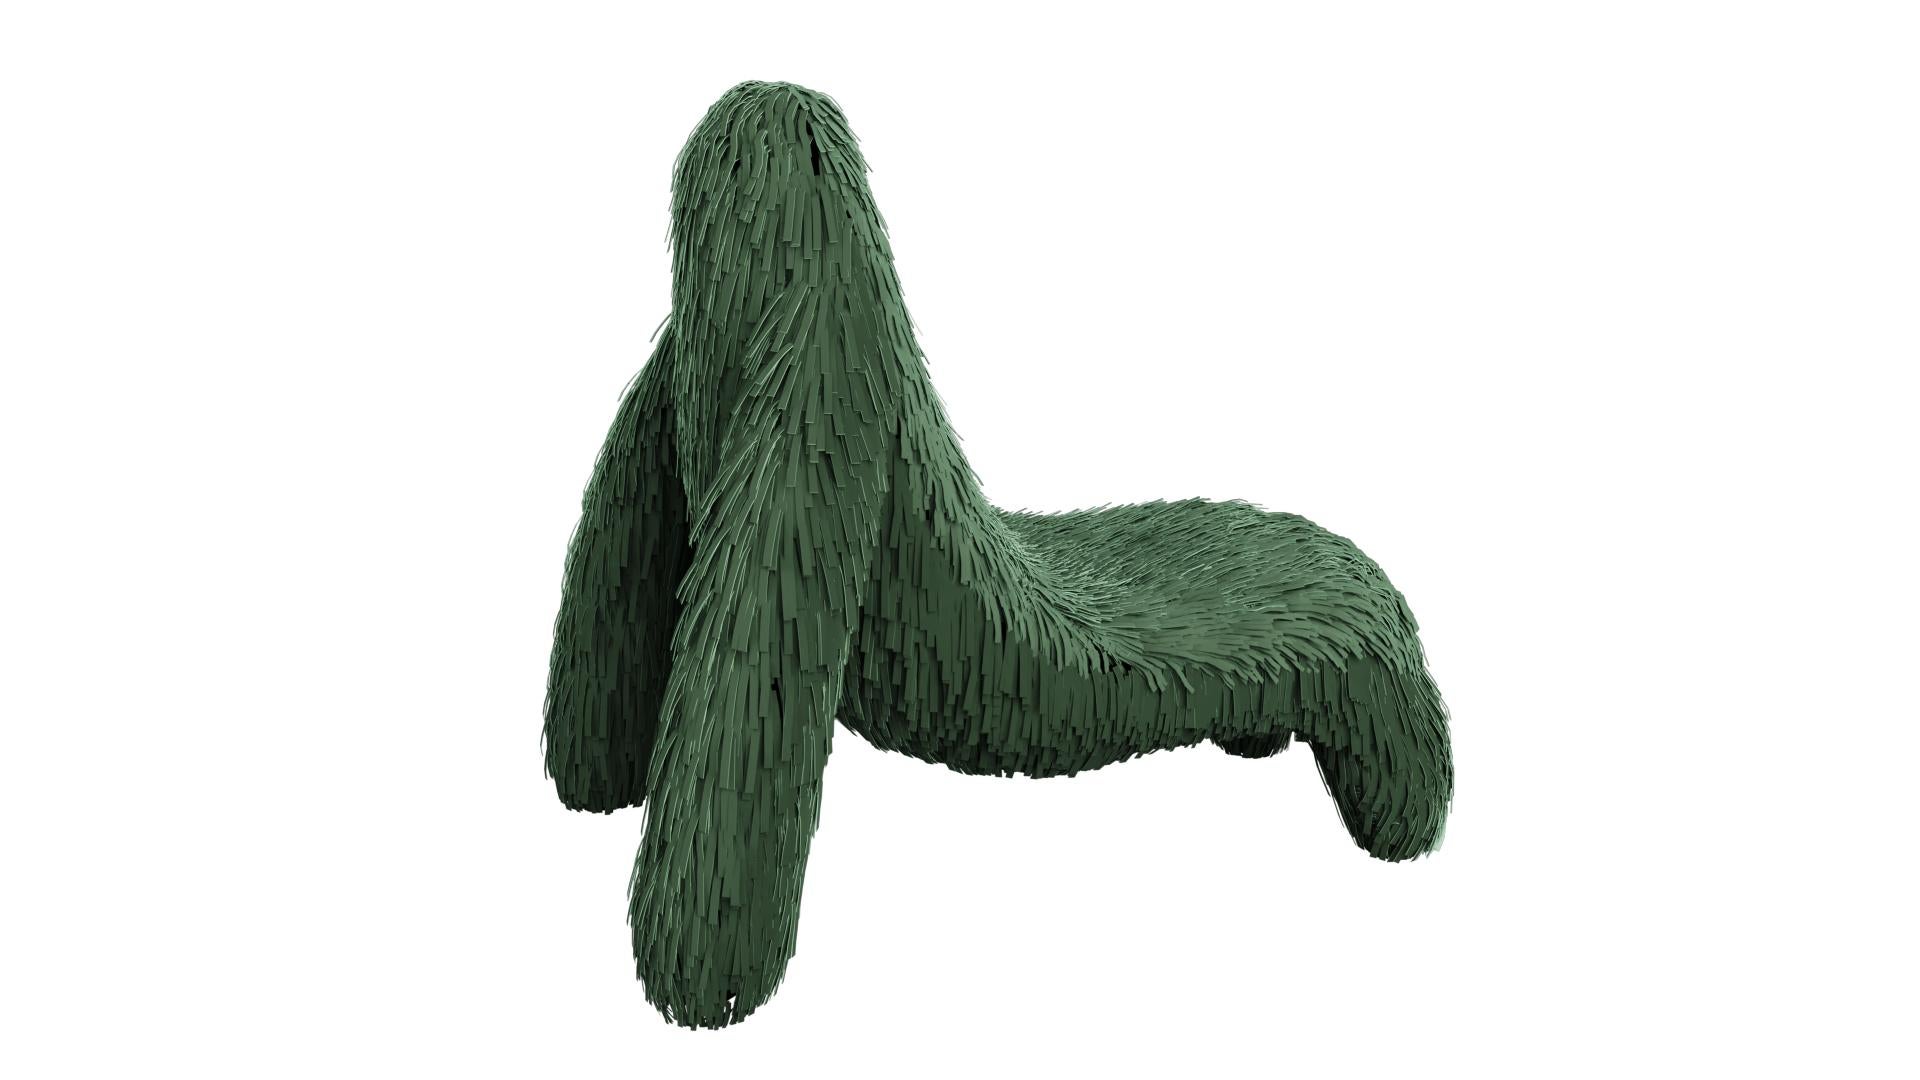 Gorilla Stuhl mit echtem grünen Leder von Marcantonio ist ein affenförmiger Sitz mit einem satten grünen Lederbezug. Ein Loungesessel mit einer fantastischen, einzigartigen Form.

Für seine ersten Kreationen stellte Marcantonio 